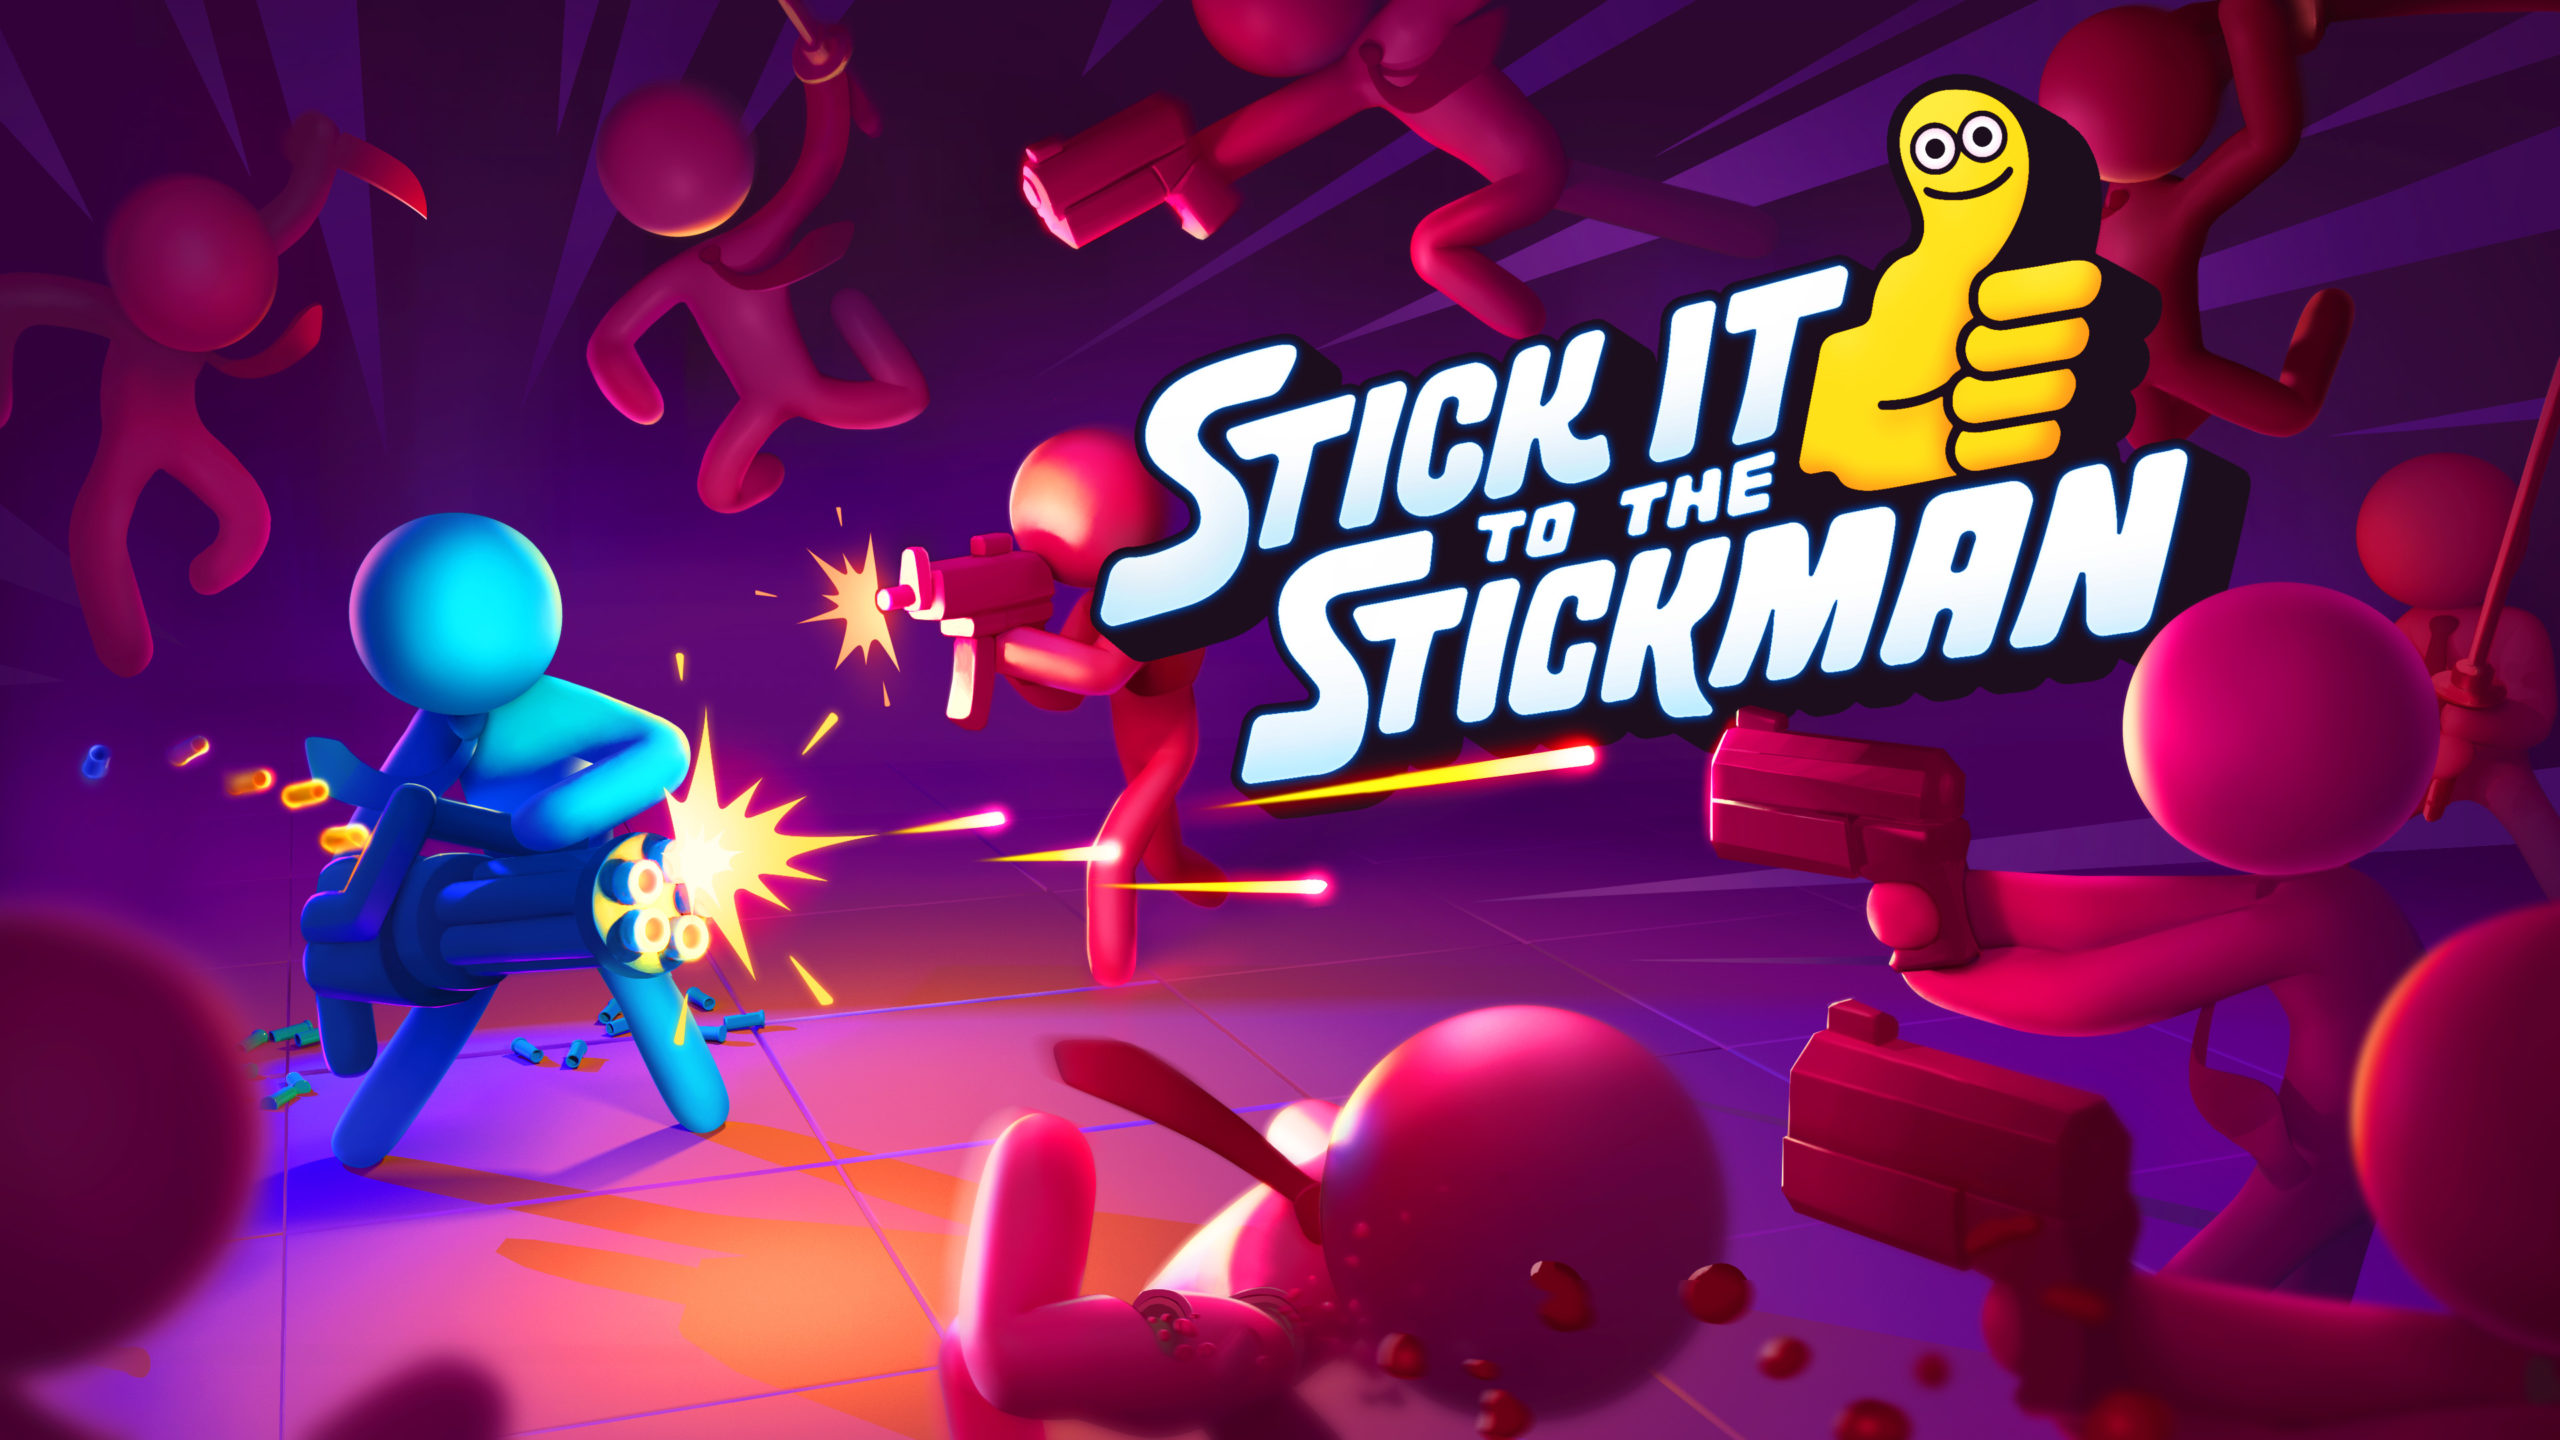 Стики ит. Stick it to the Stick man. Stick to the Stickman. Игра Stick it to the man. Stick it the Stickman.